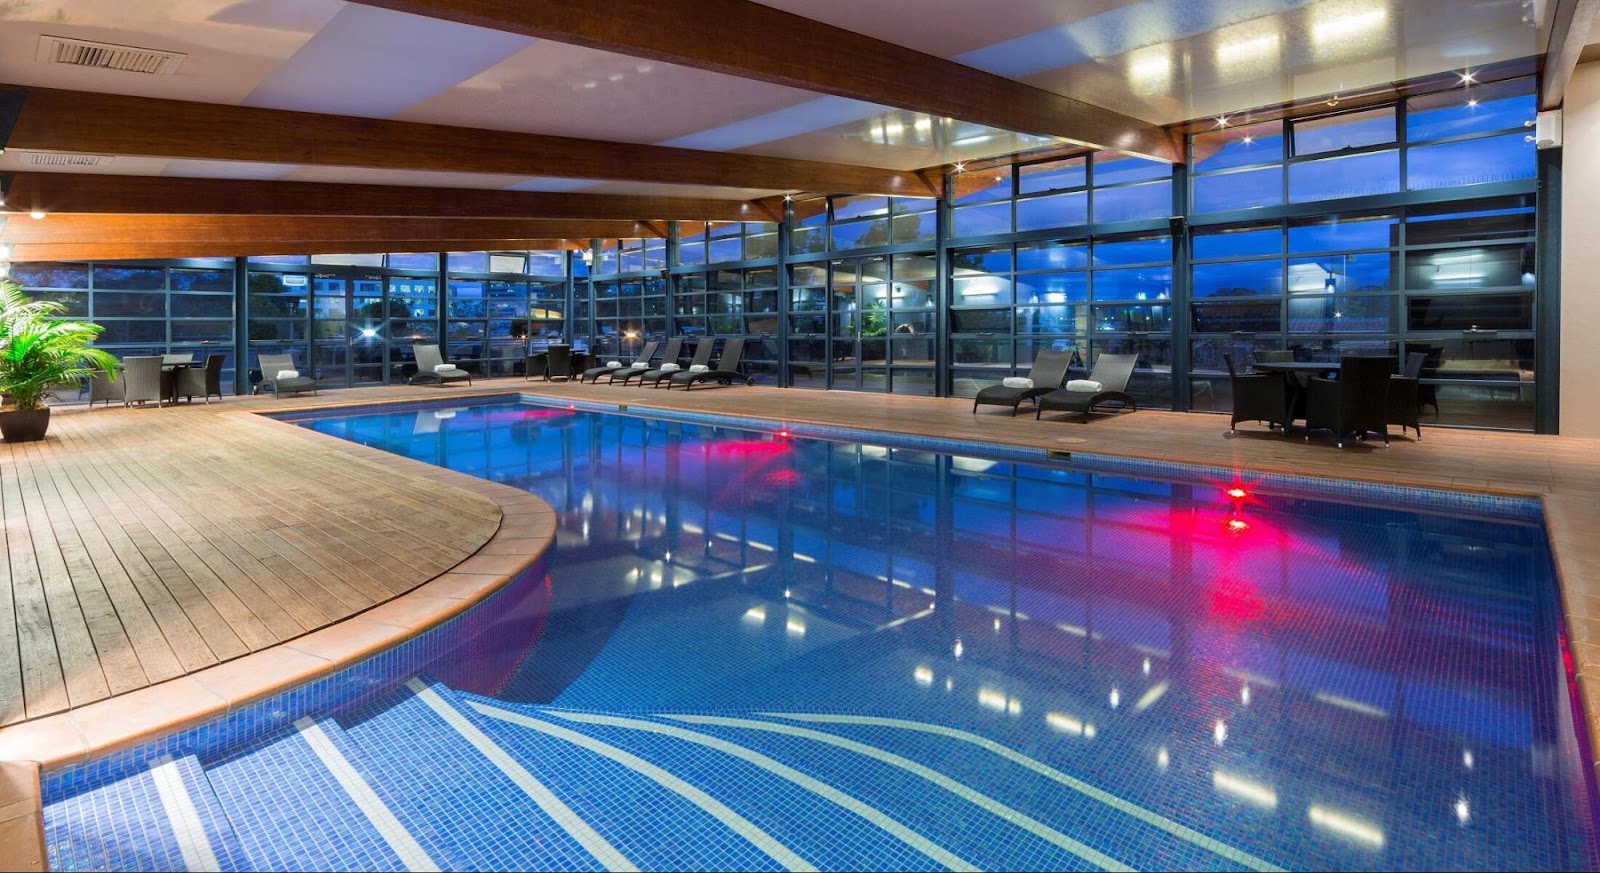 Novotel Canberra | Canberra City Accommodation | 4.5 Star Hotel